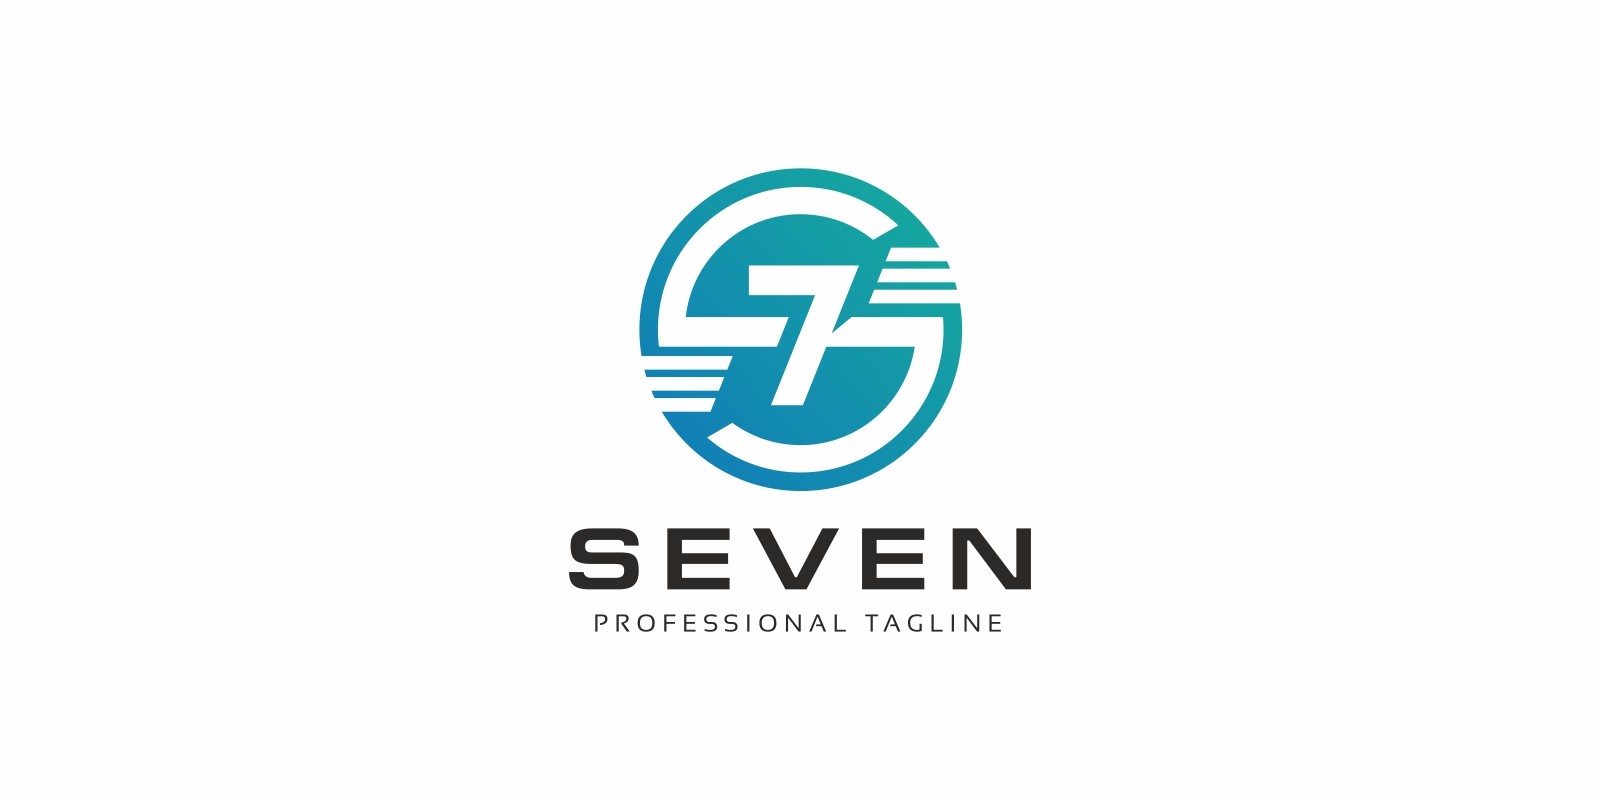 Тв севен. Логотип 7. J.Seven логотип. Семерка логотип. 7 Eleven логотип.